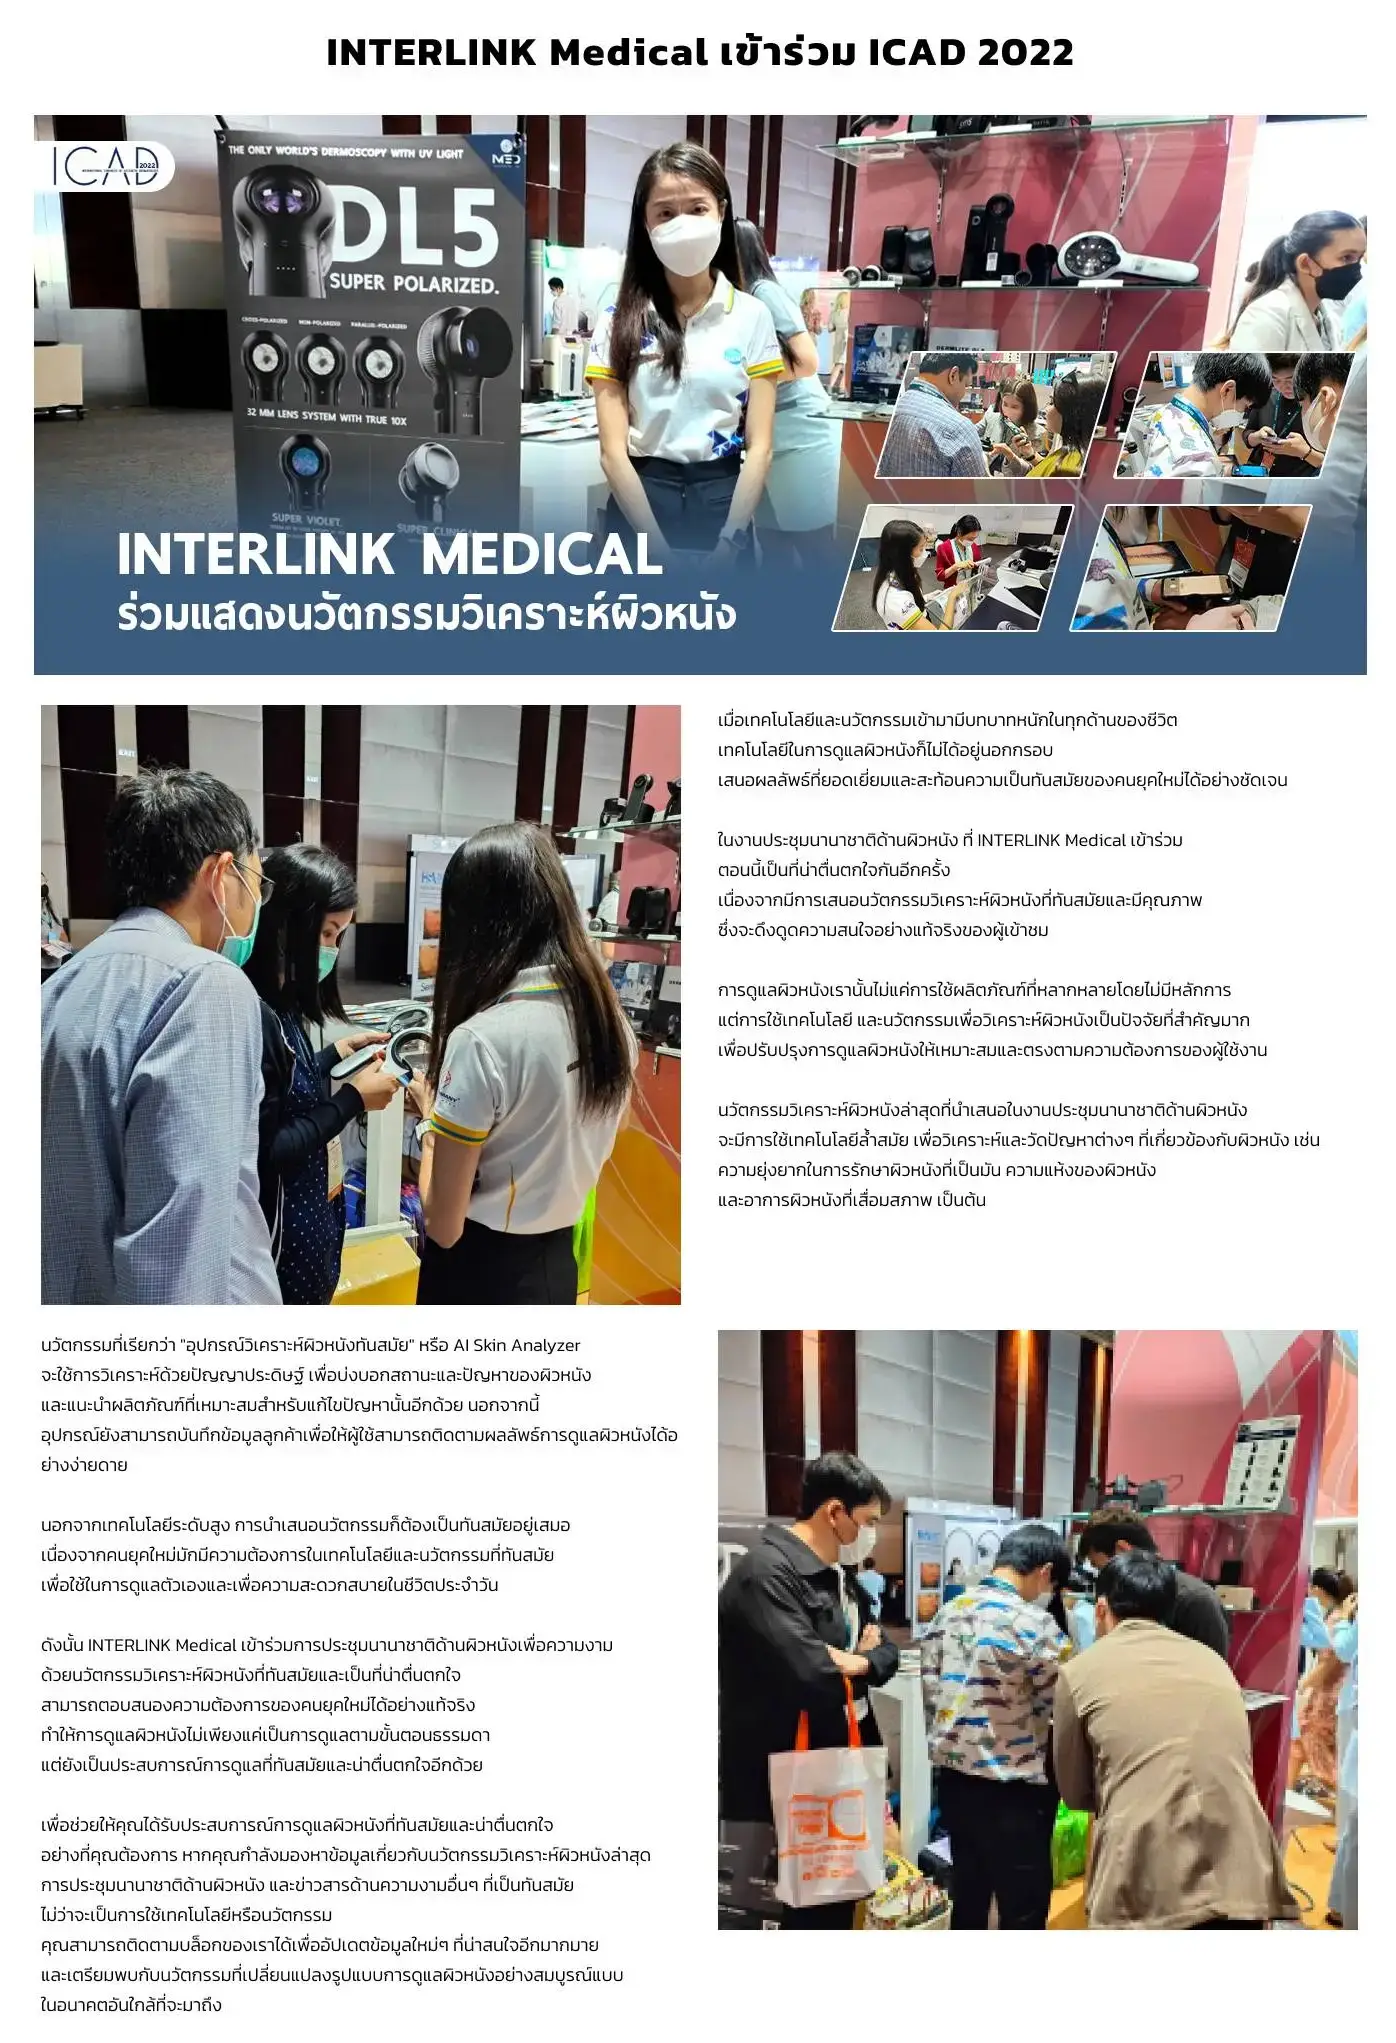 imed, medical, news, imed event, interlinkmedical news